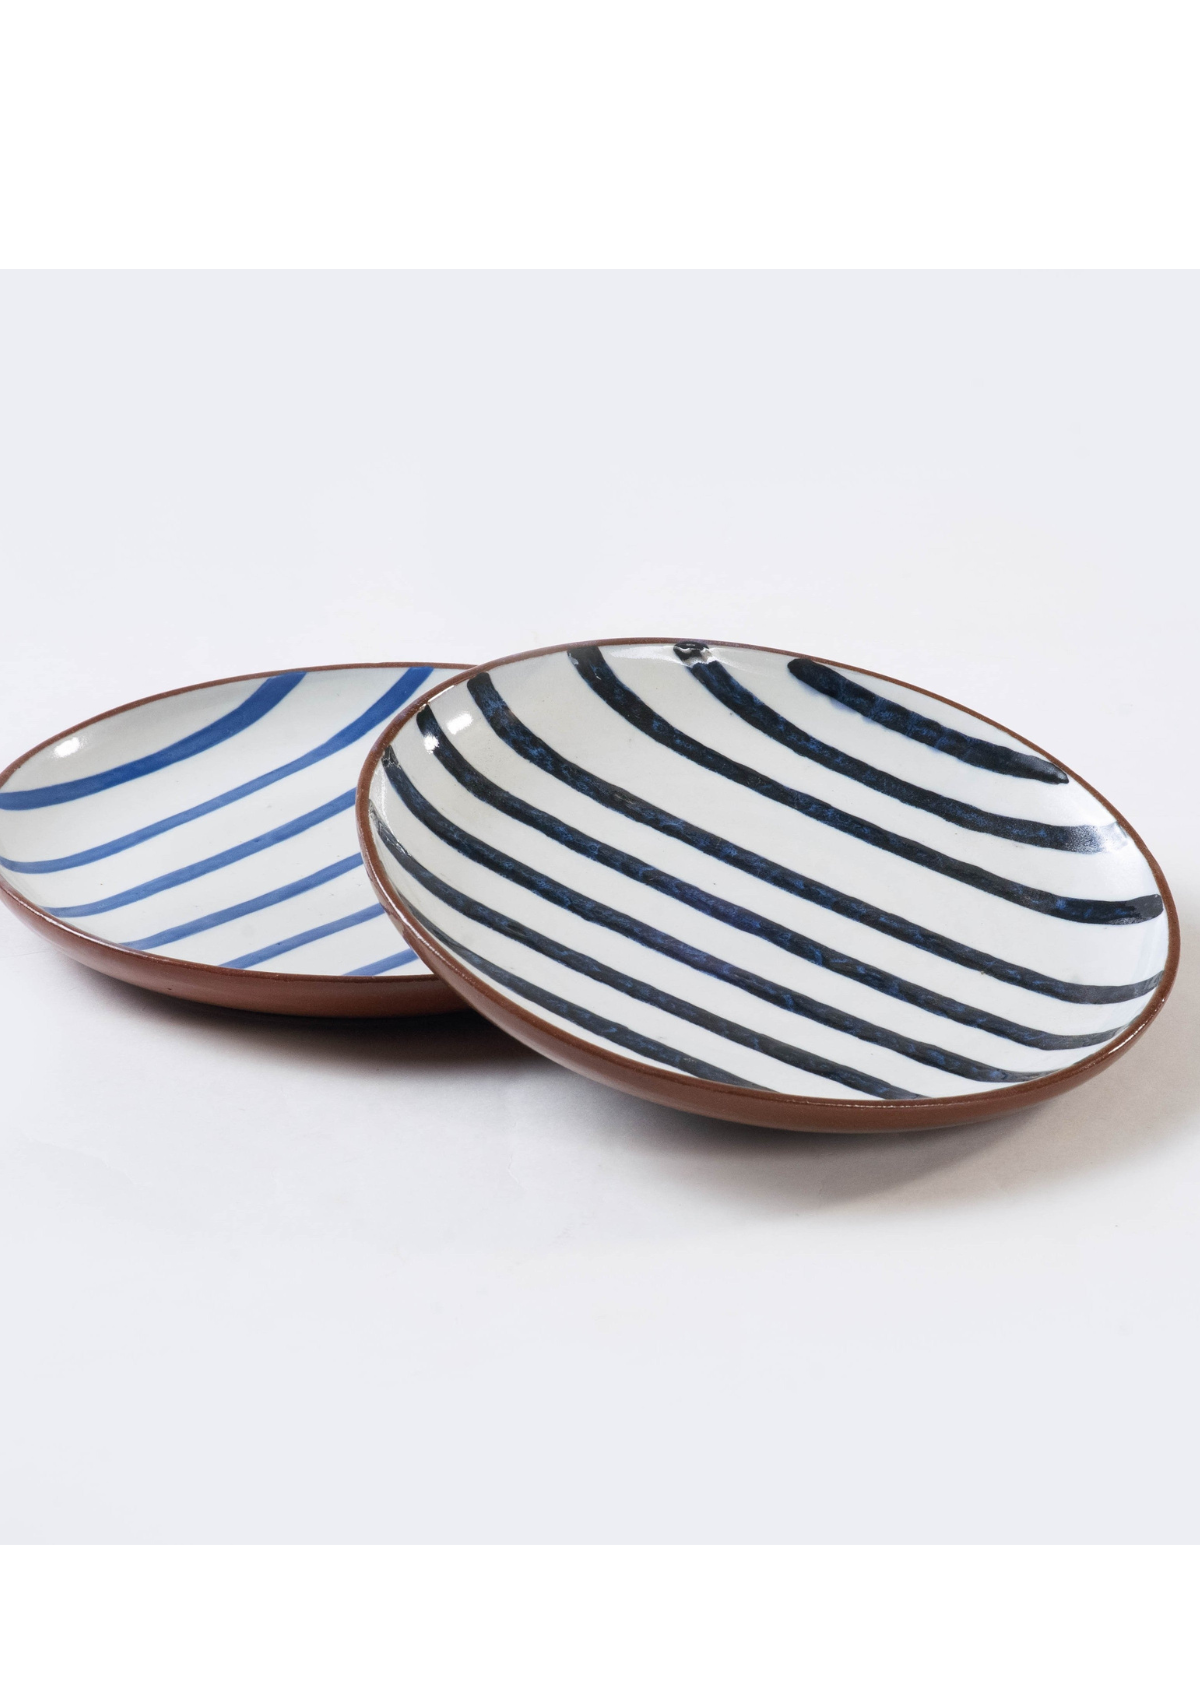 Jharana Striped Plates